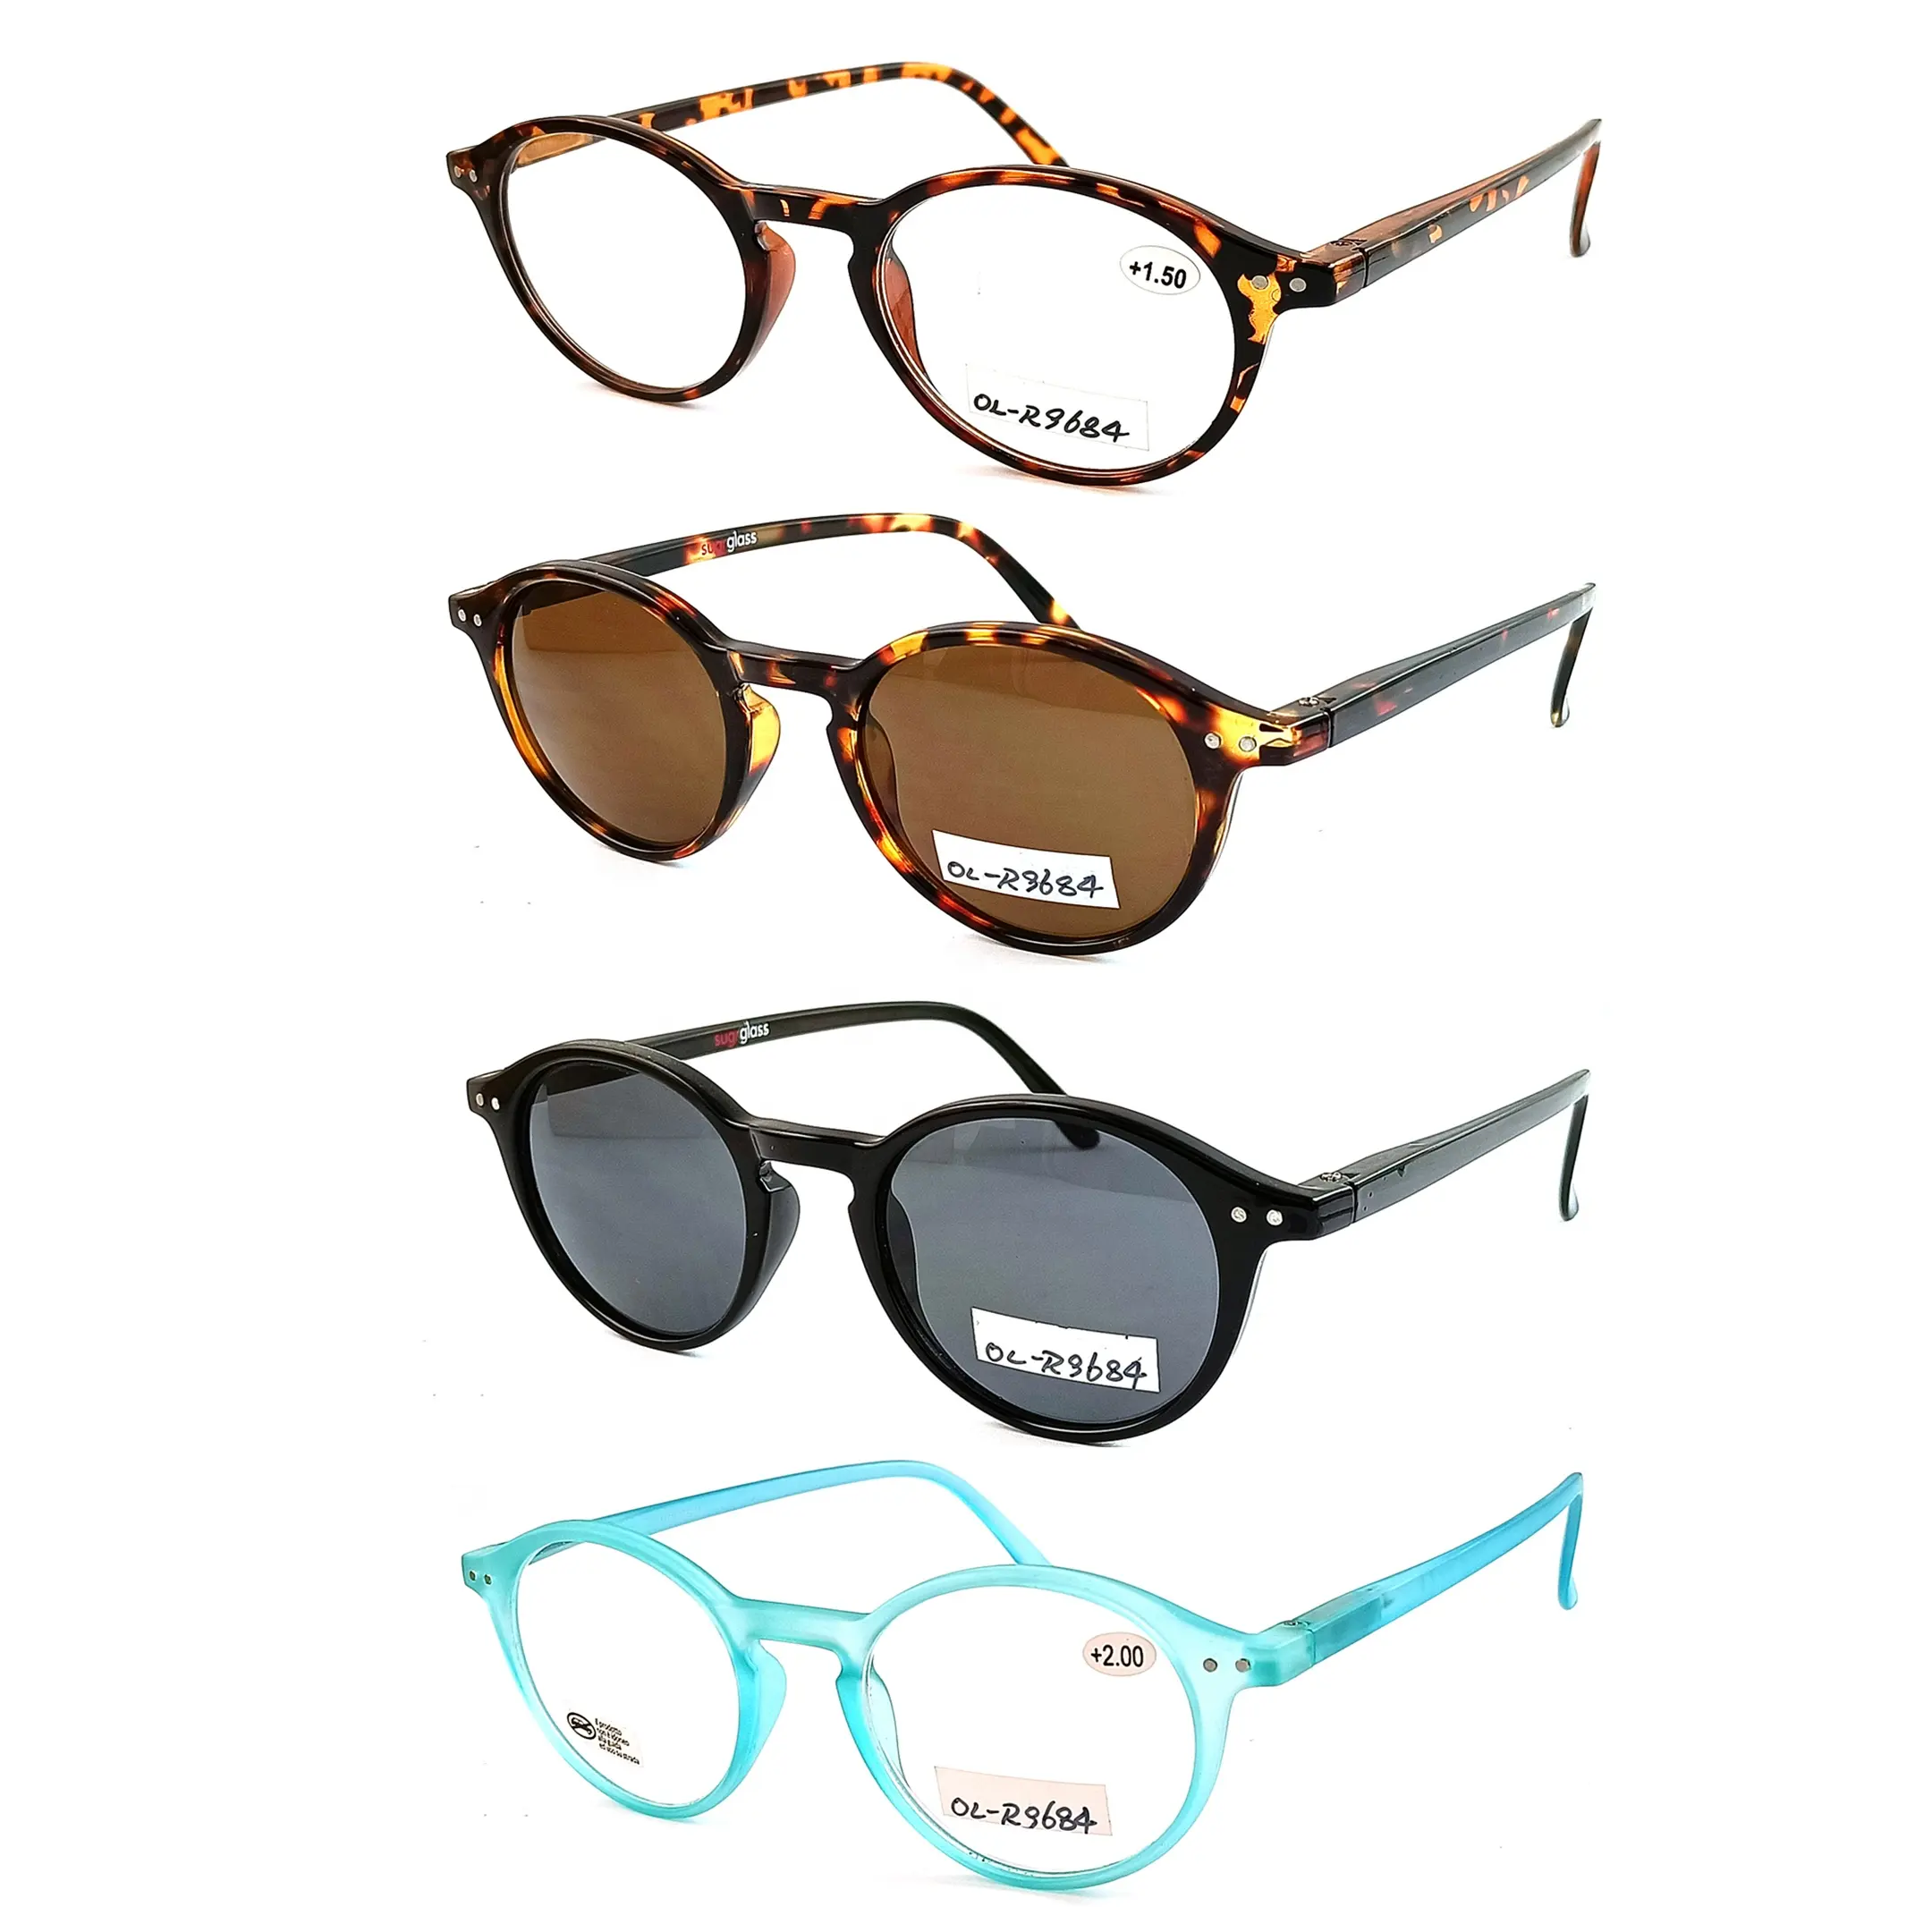 Kacamata baca kualitas tinggi laris, bingkai bulat kacamata komputer anti cahaya biru, kacamata baca wanita.